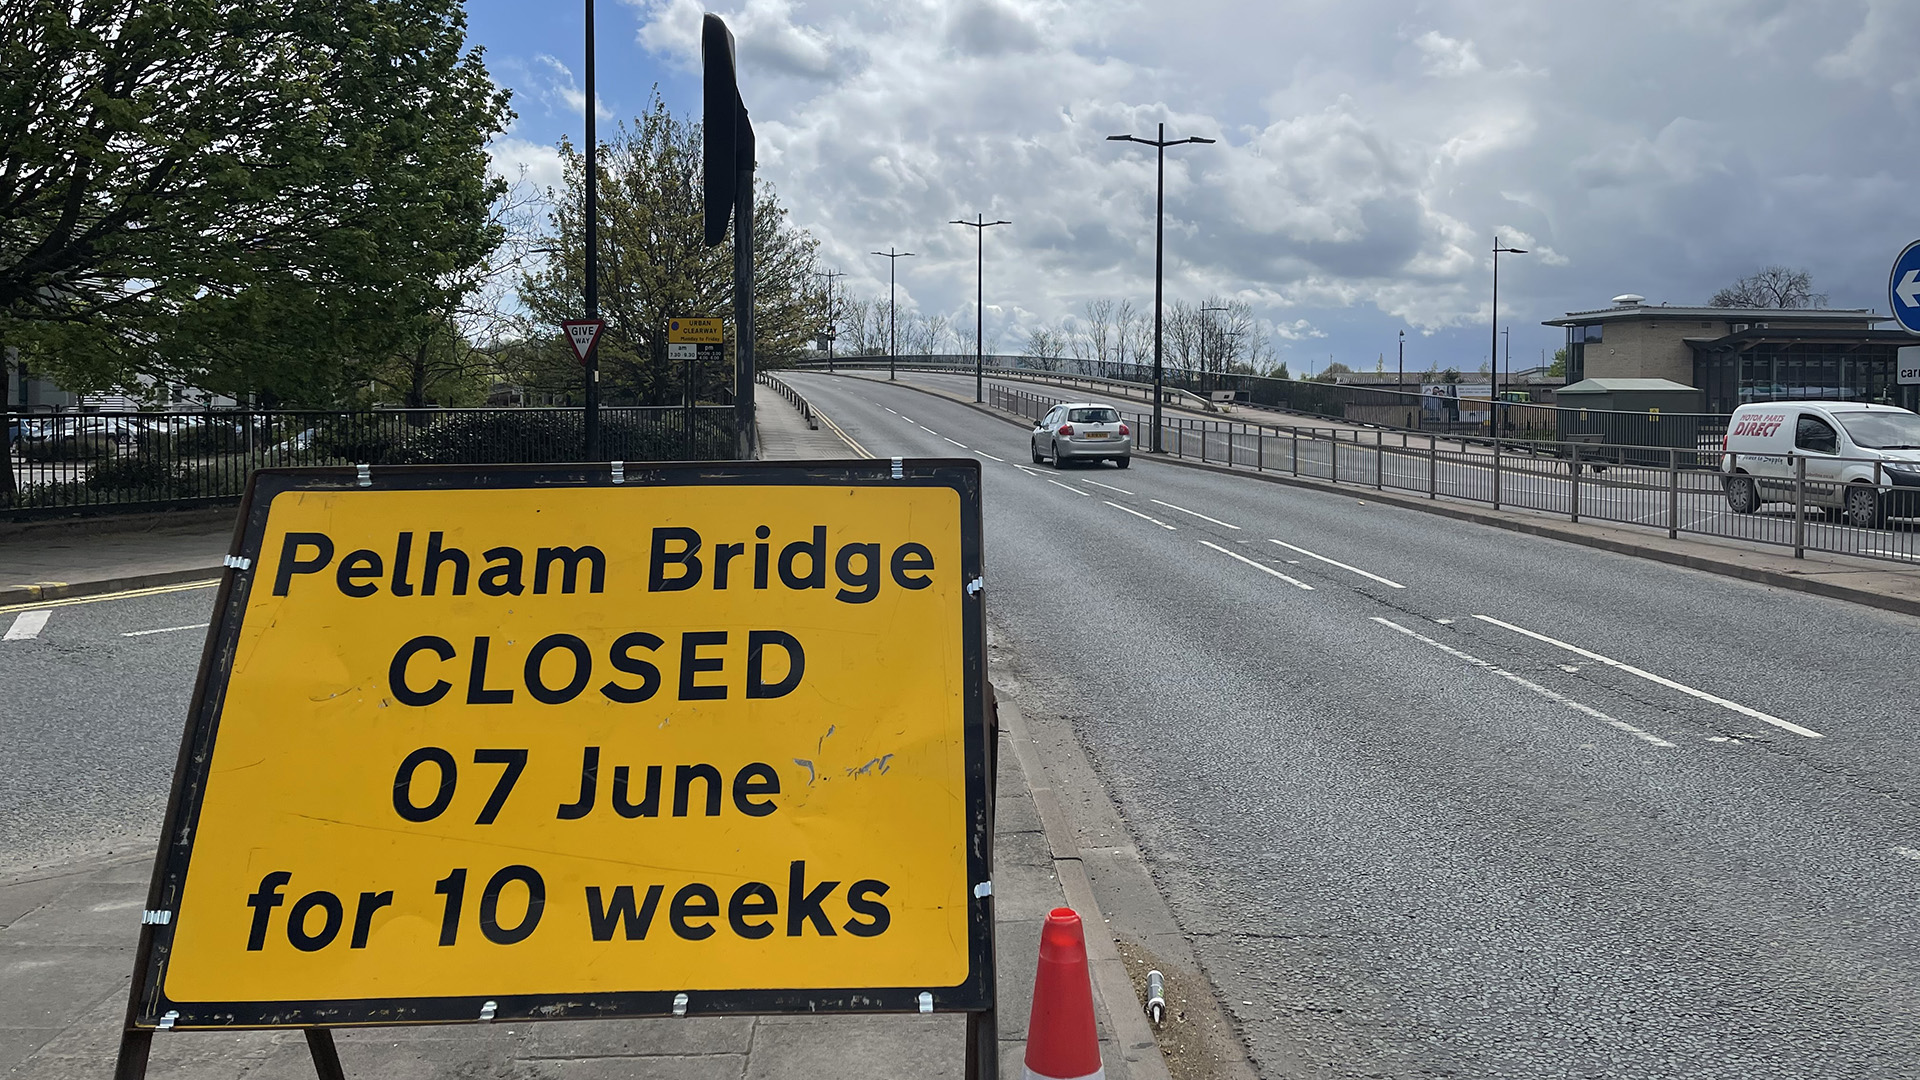 Pelham Bridge Closure